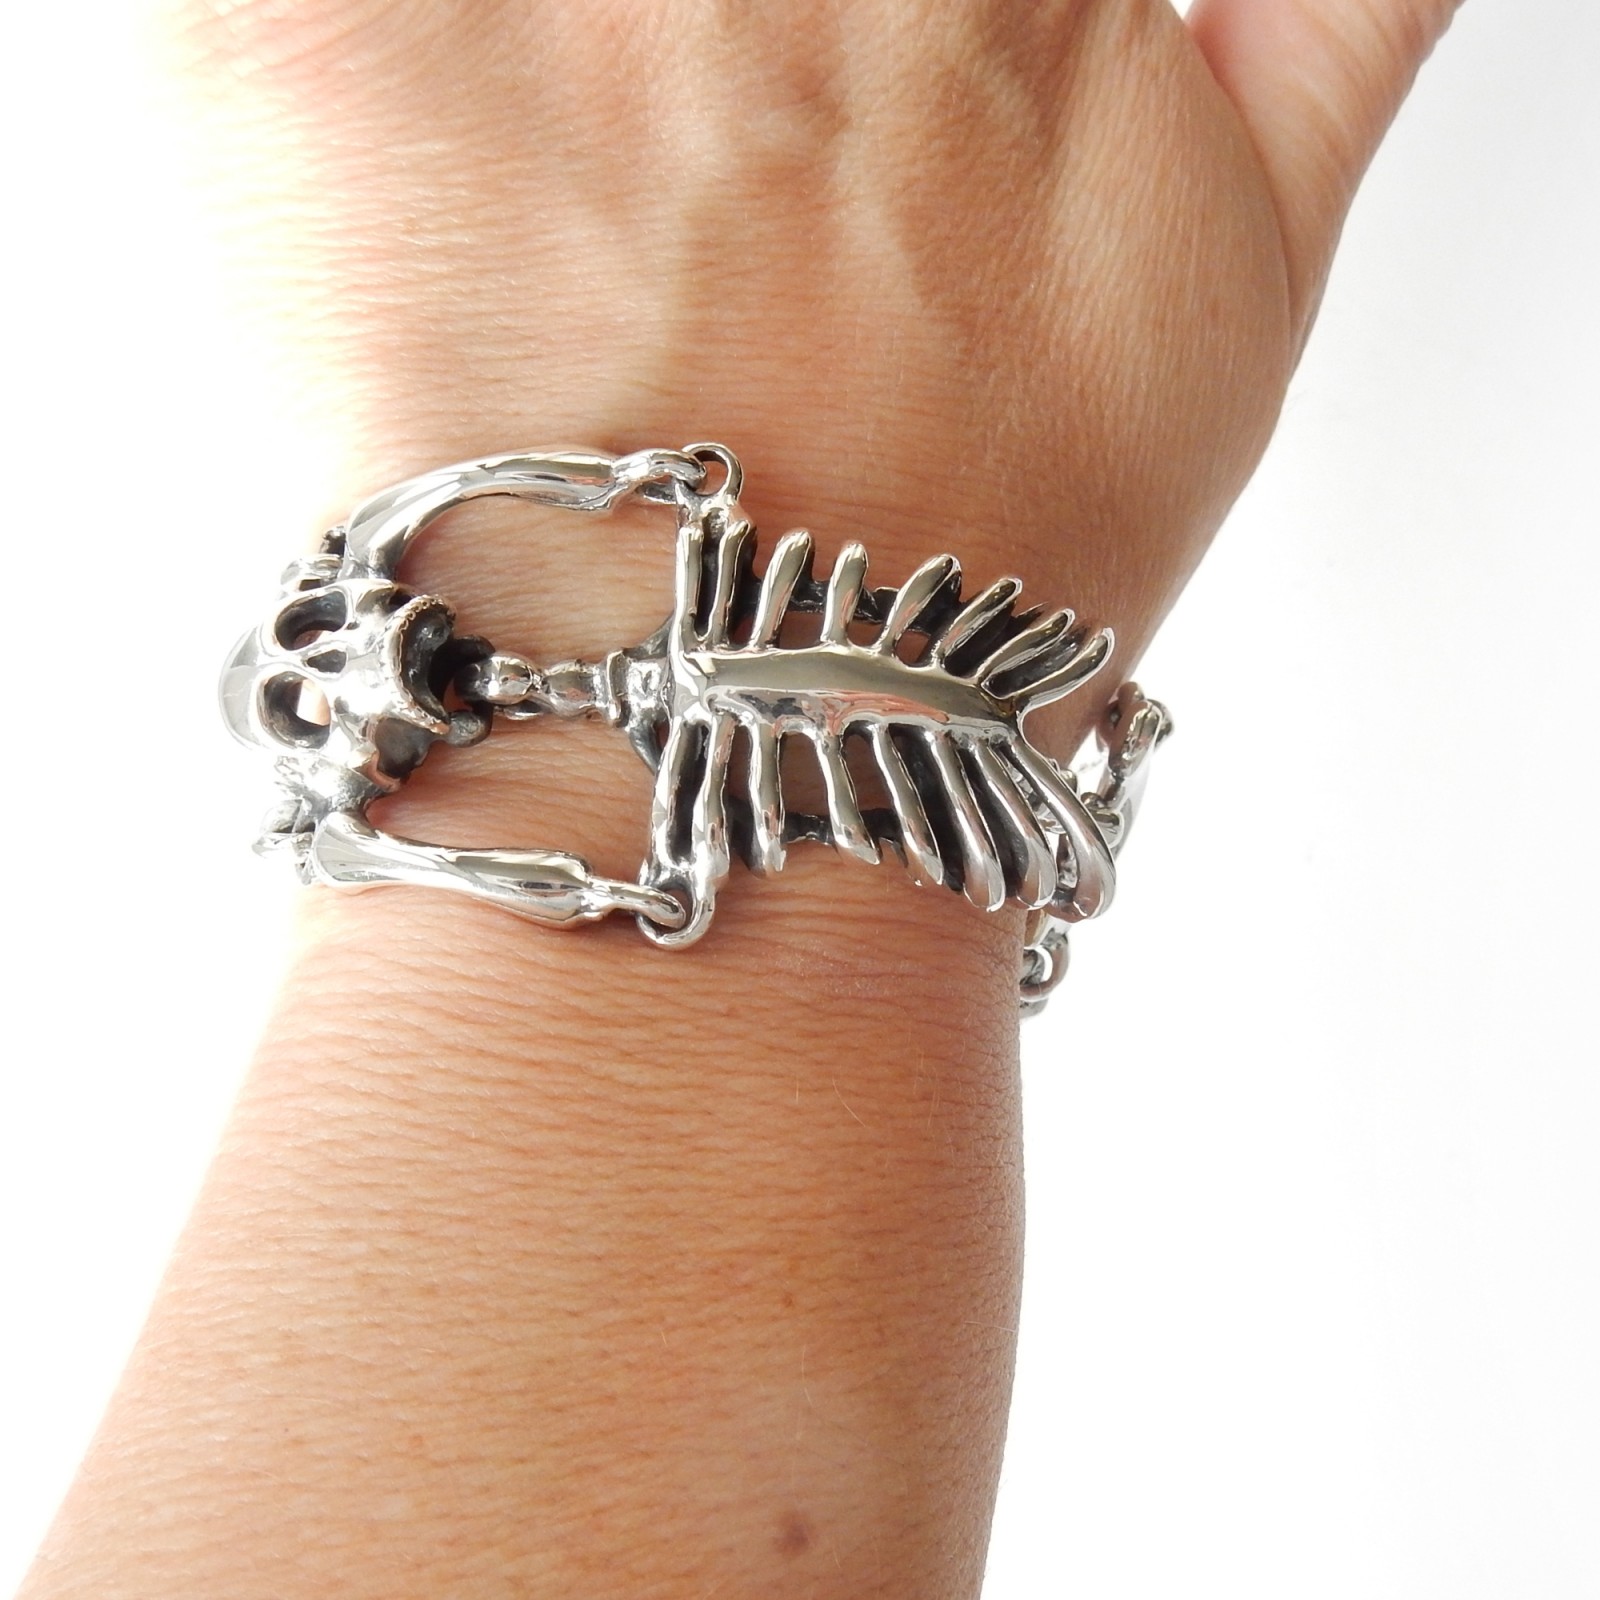 Skeleton Hand Chain Cuff Bracelet - Spencer's